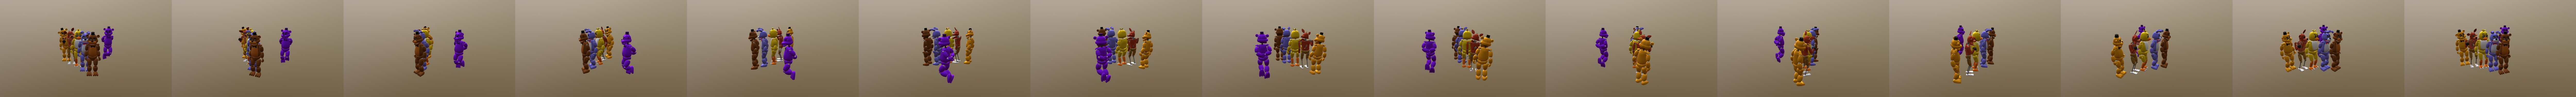 fnaf 1 all animatronics (blend) - Download Free 3D model by JustAnAser  (@JustAnAser) [9b5678a]